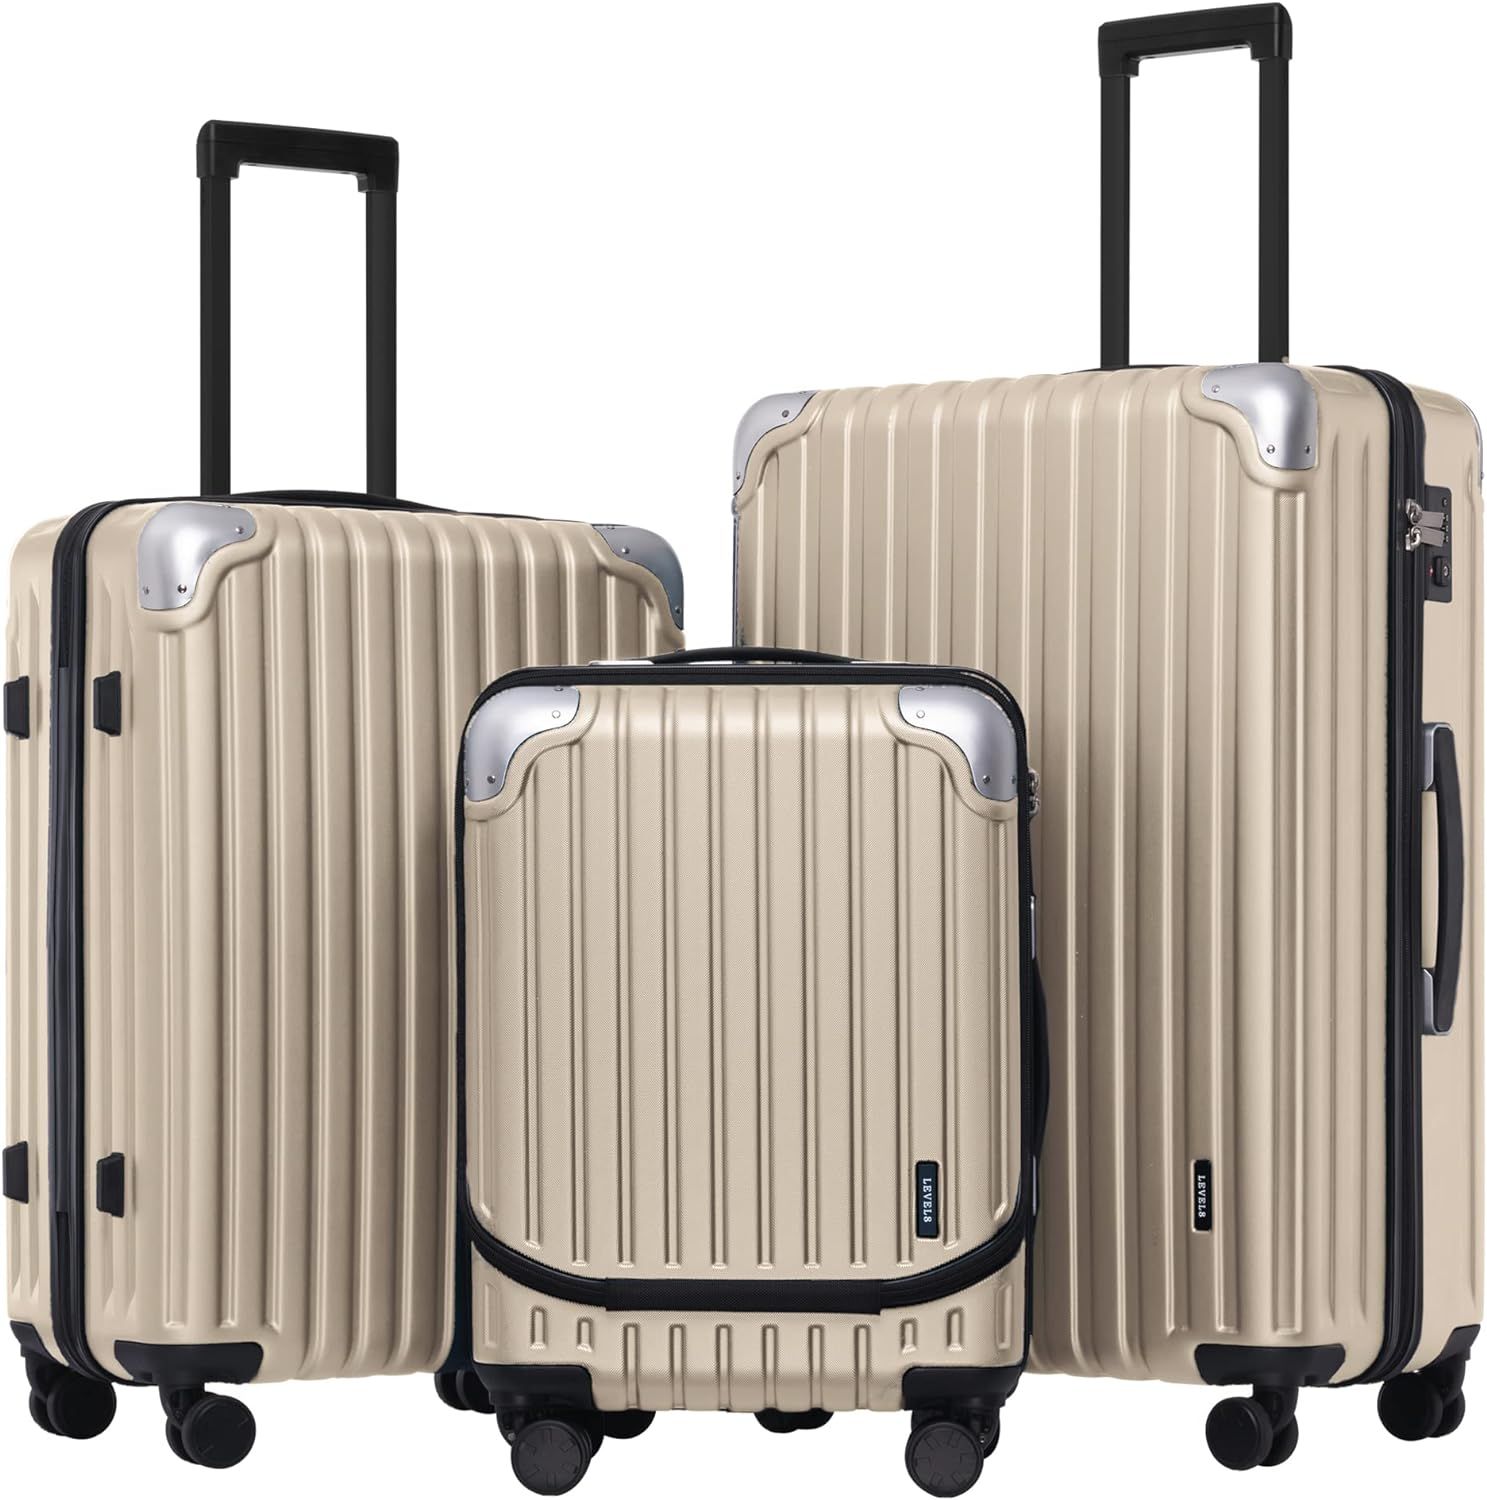 LEVEL8 Grace Luggage Sets Hardside Suitcase Set with Spinner Wheels,TSA Lock, 3-Piece Set (20/24/... | Amazon (US)